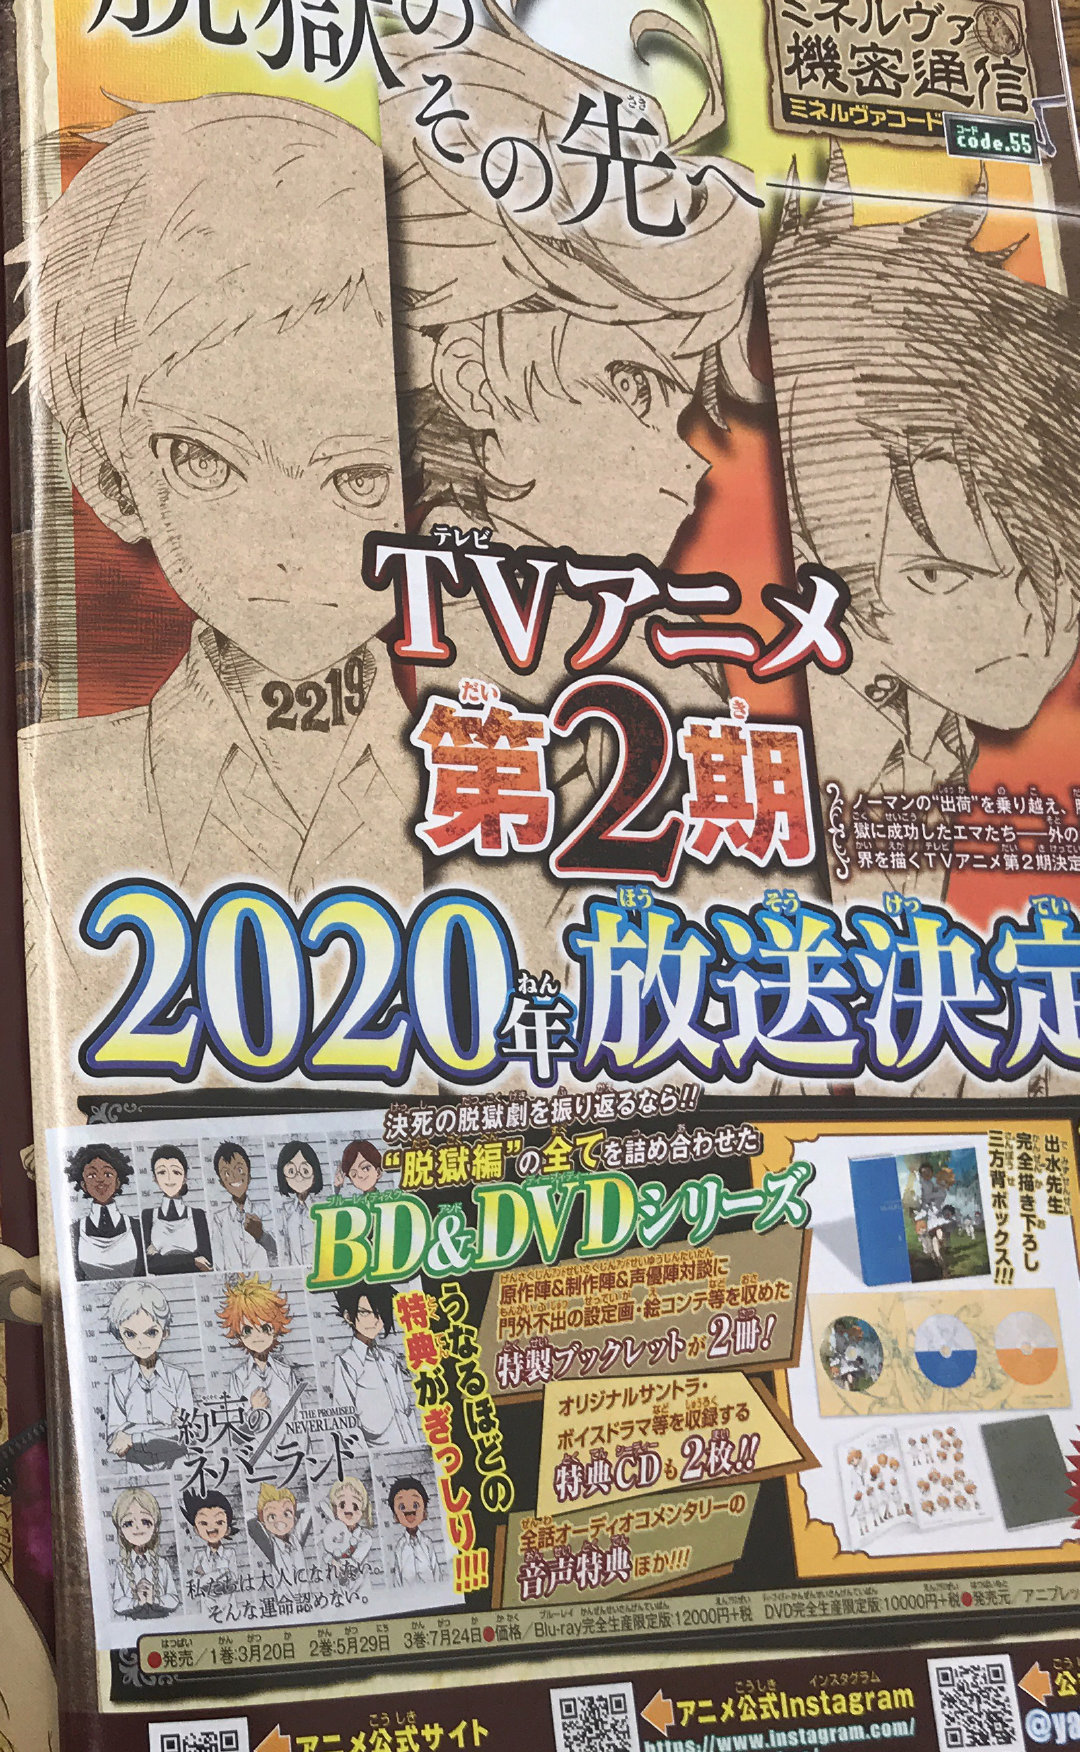 âThe Promised Neverlandâ S2 TV anime announced for 2020.